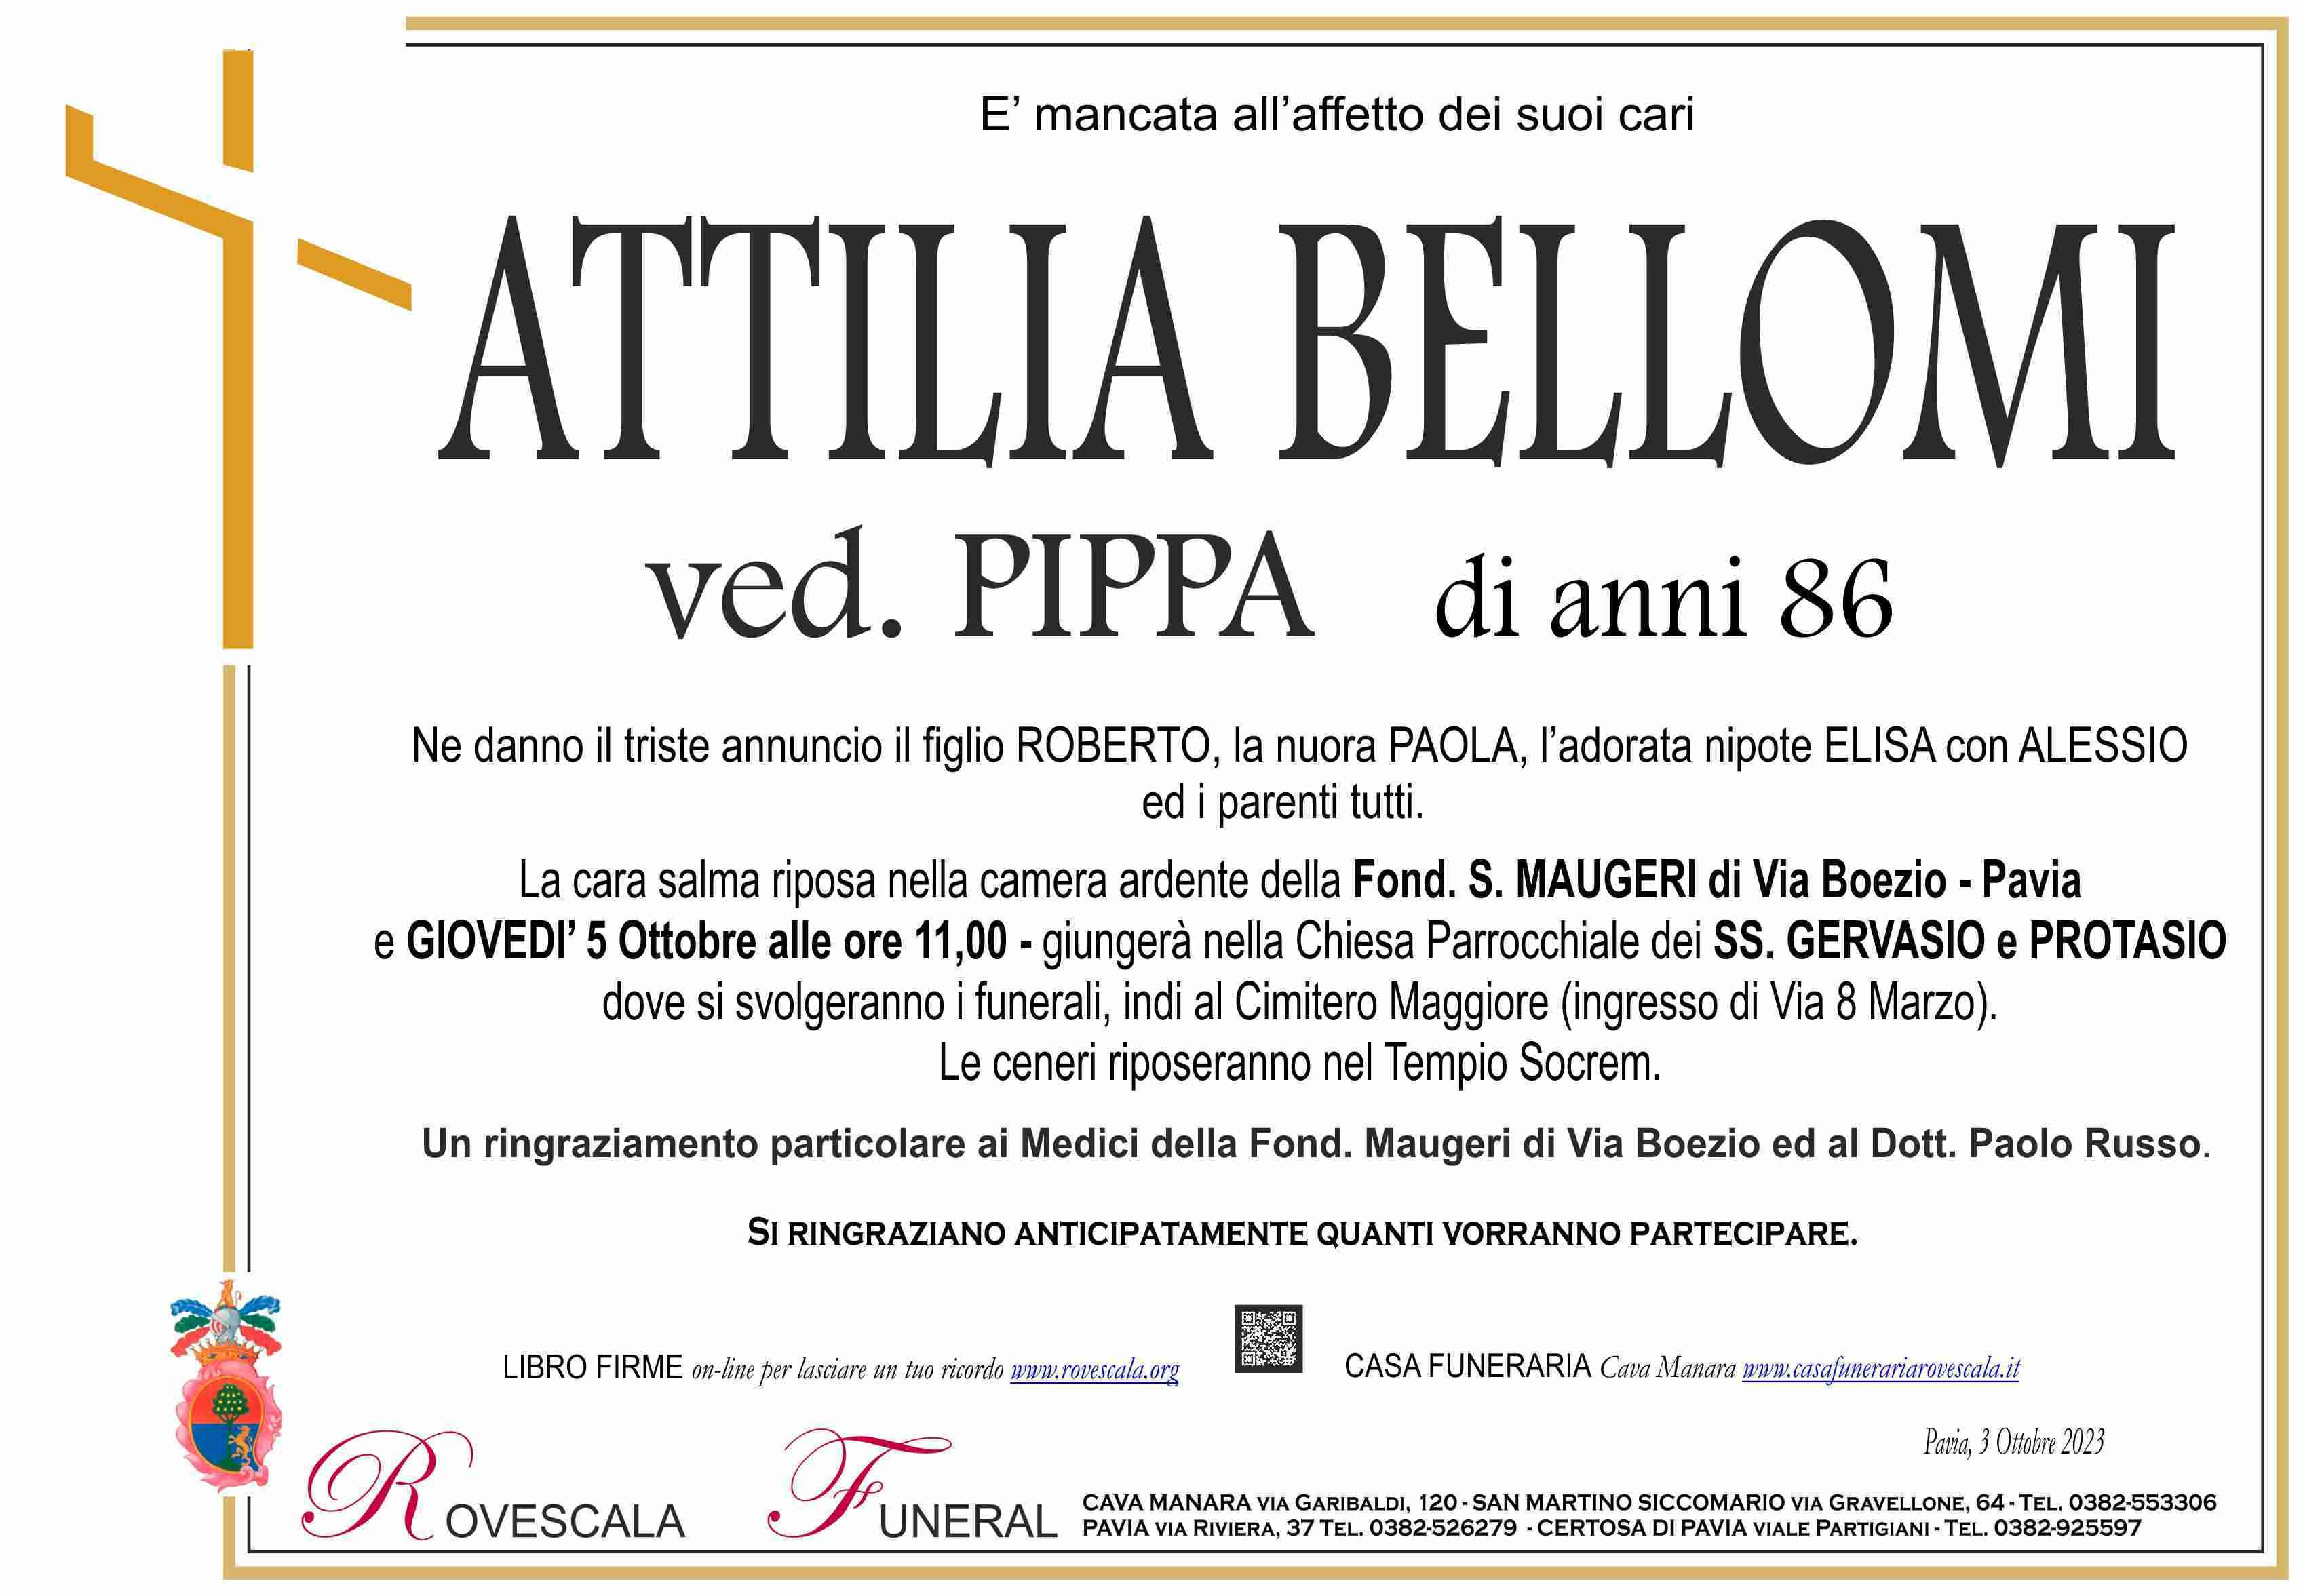 Attilia Bellomi